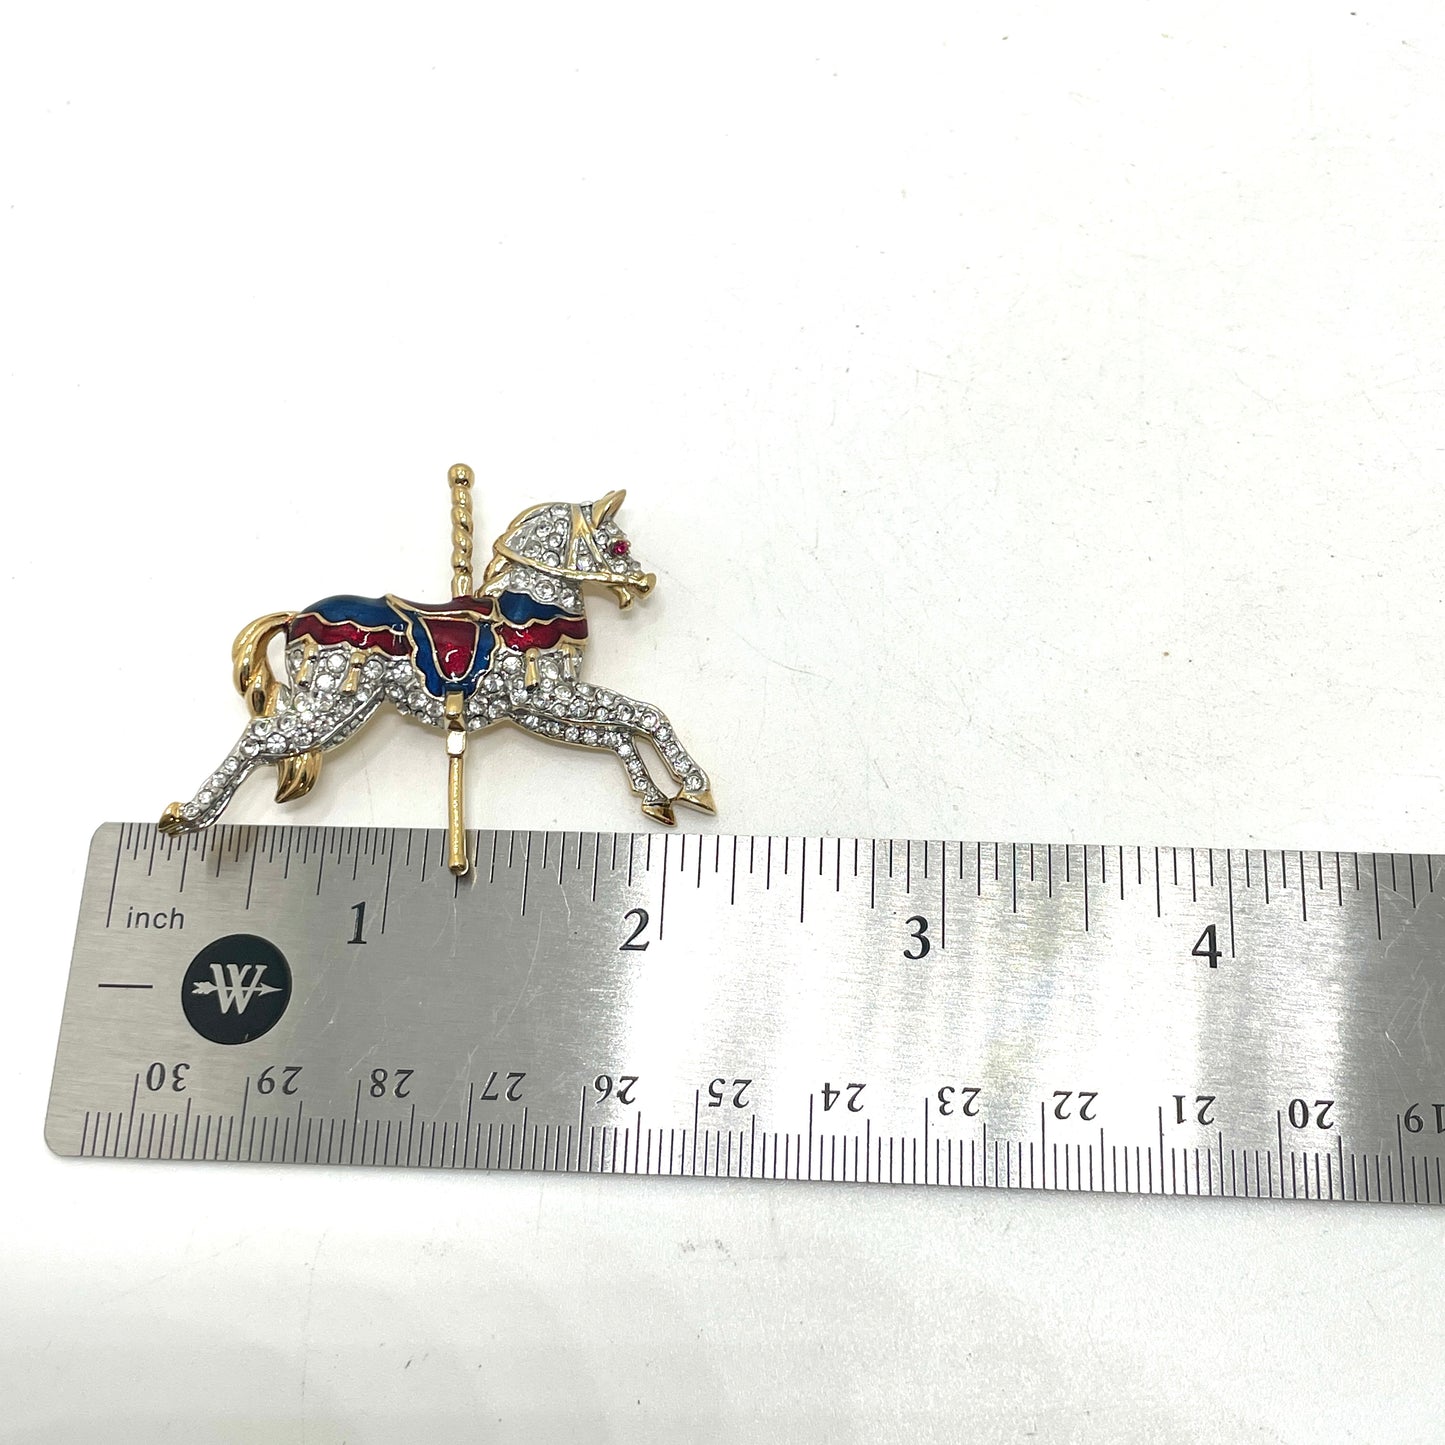 Vintage Carousel Horse Pin